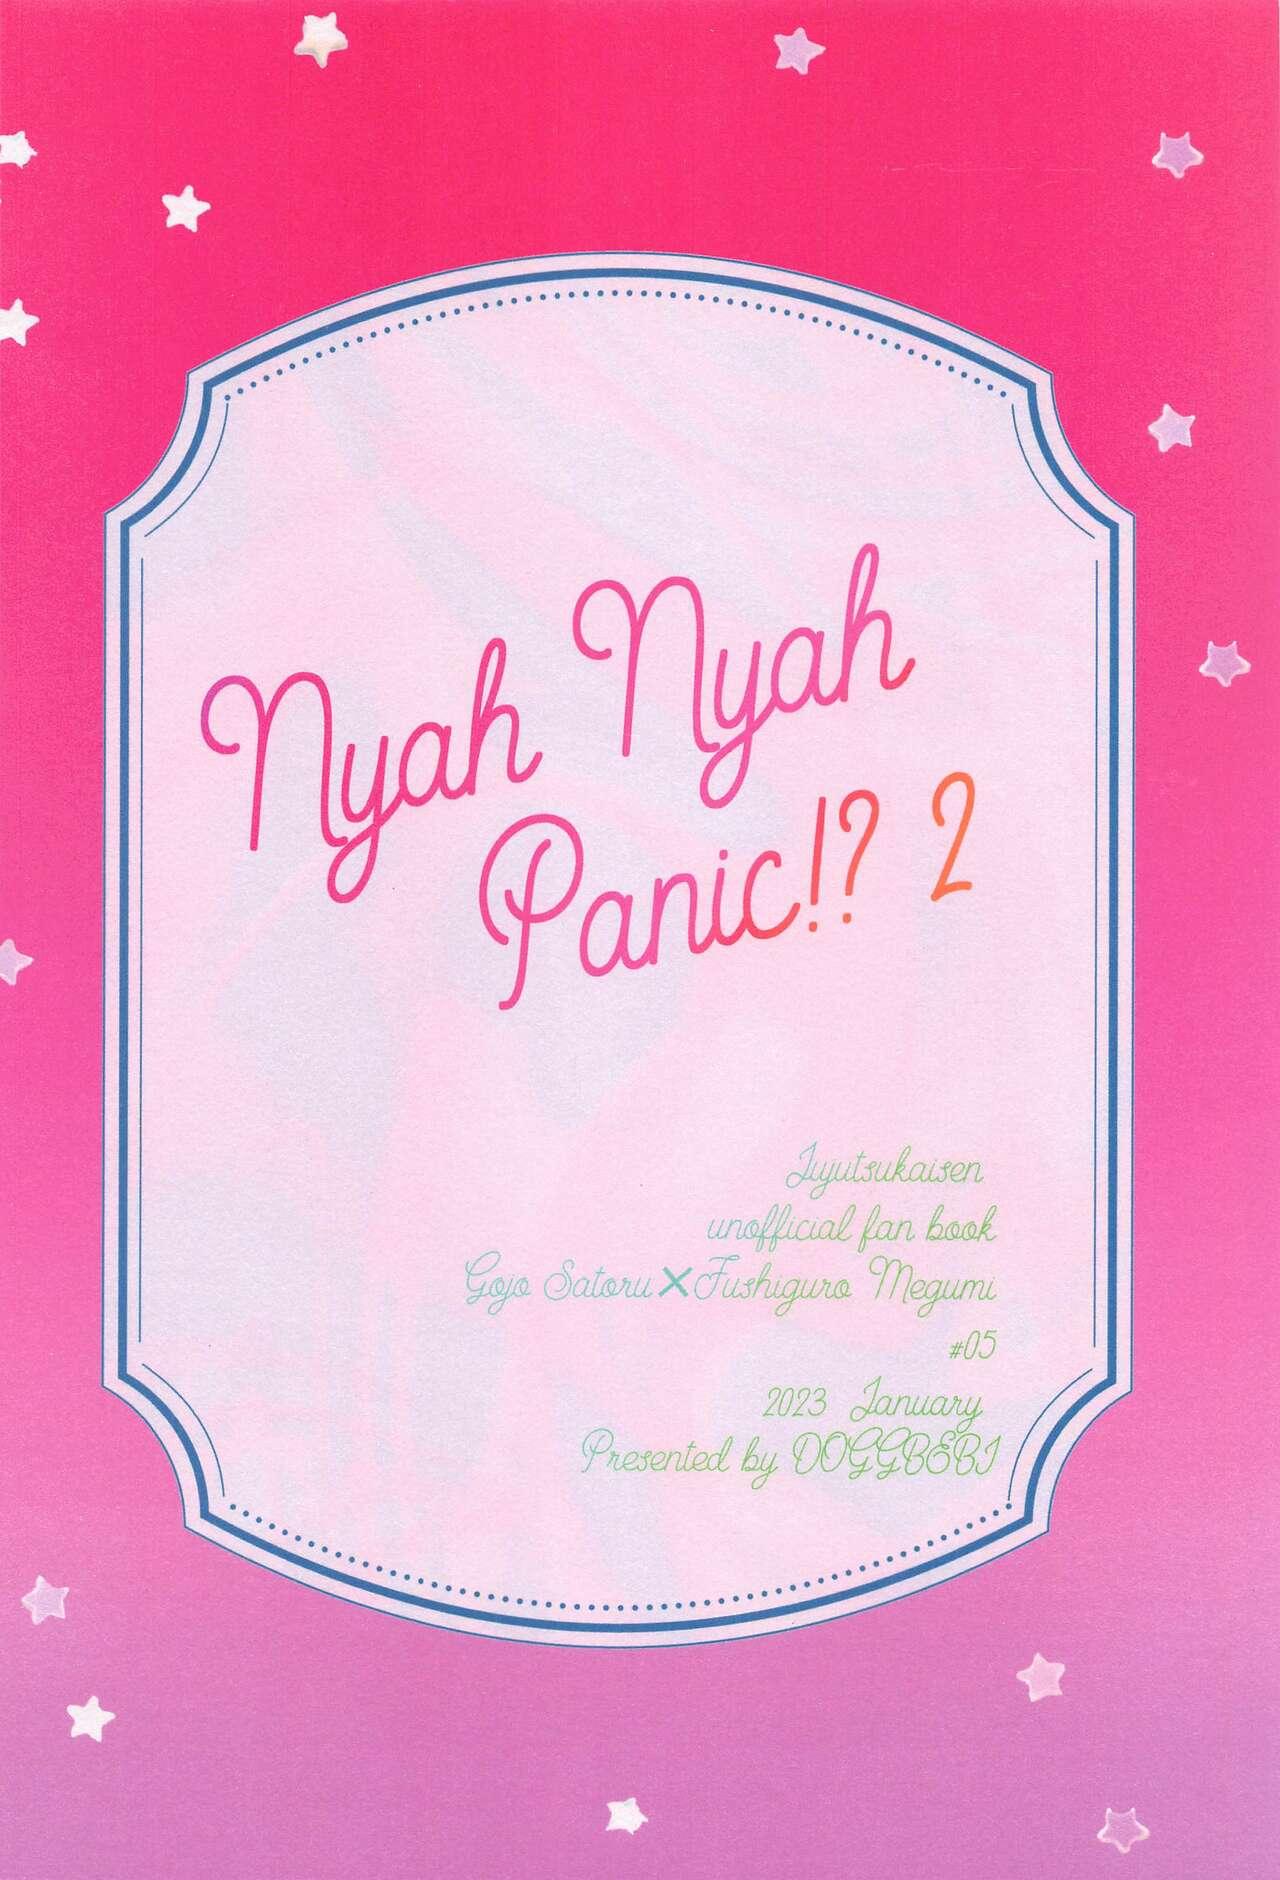 Nyan Nyan Panic!? 2 41